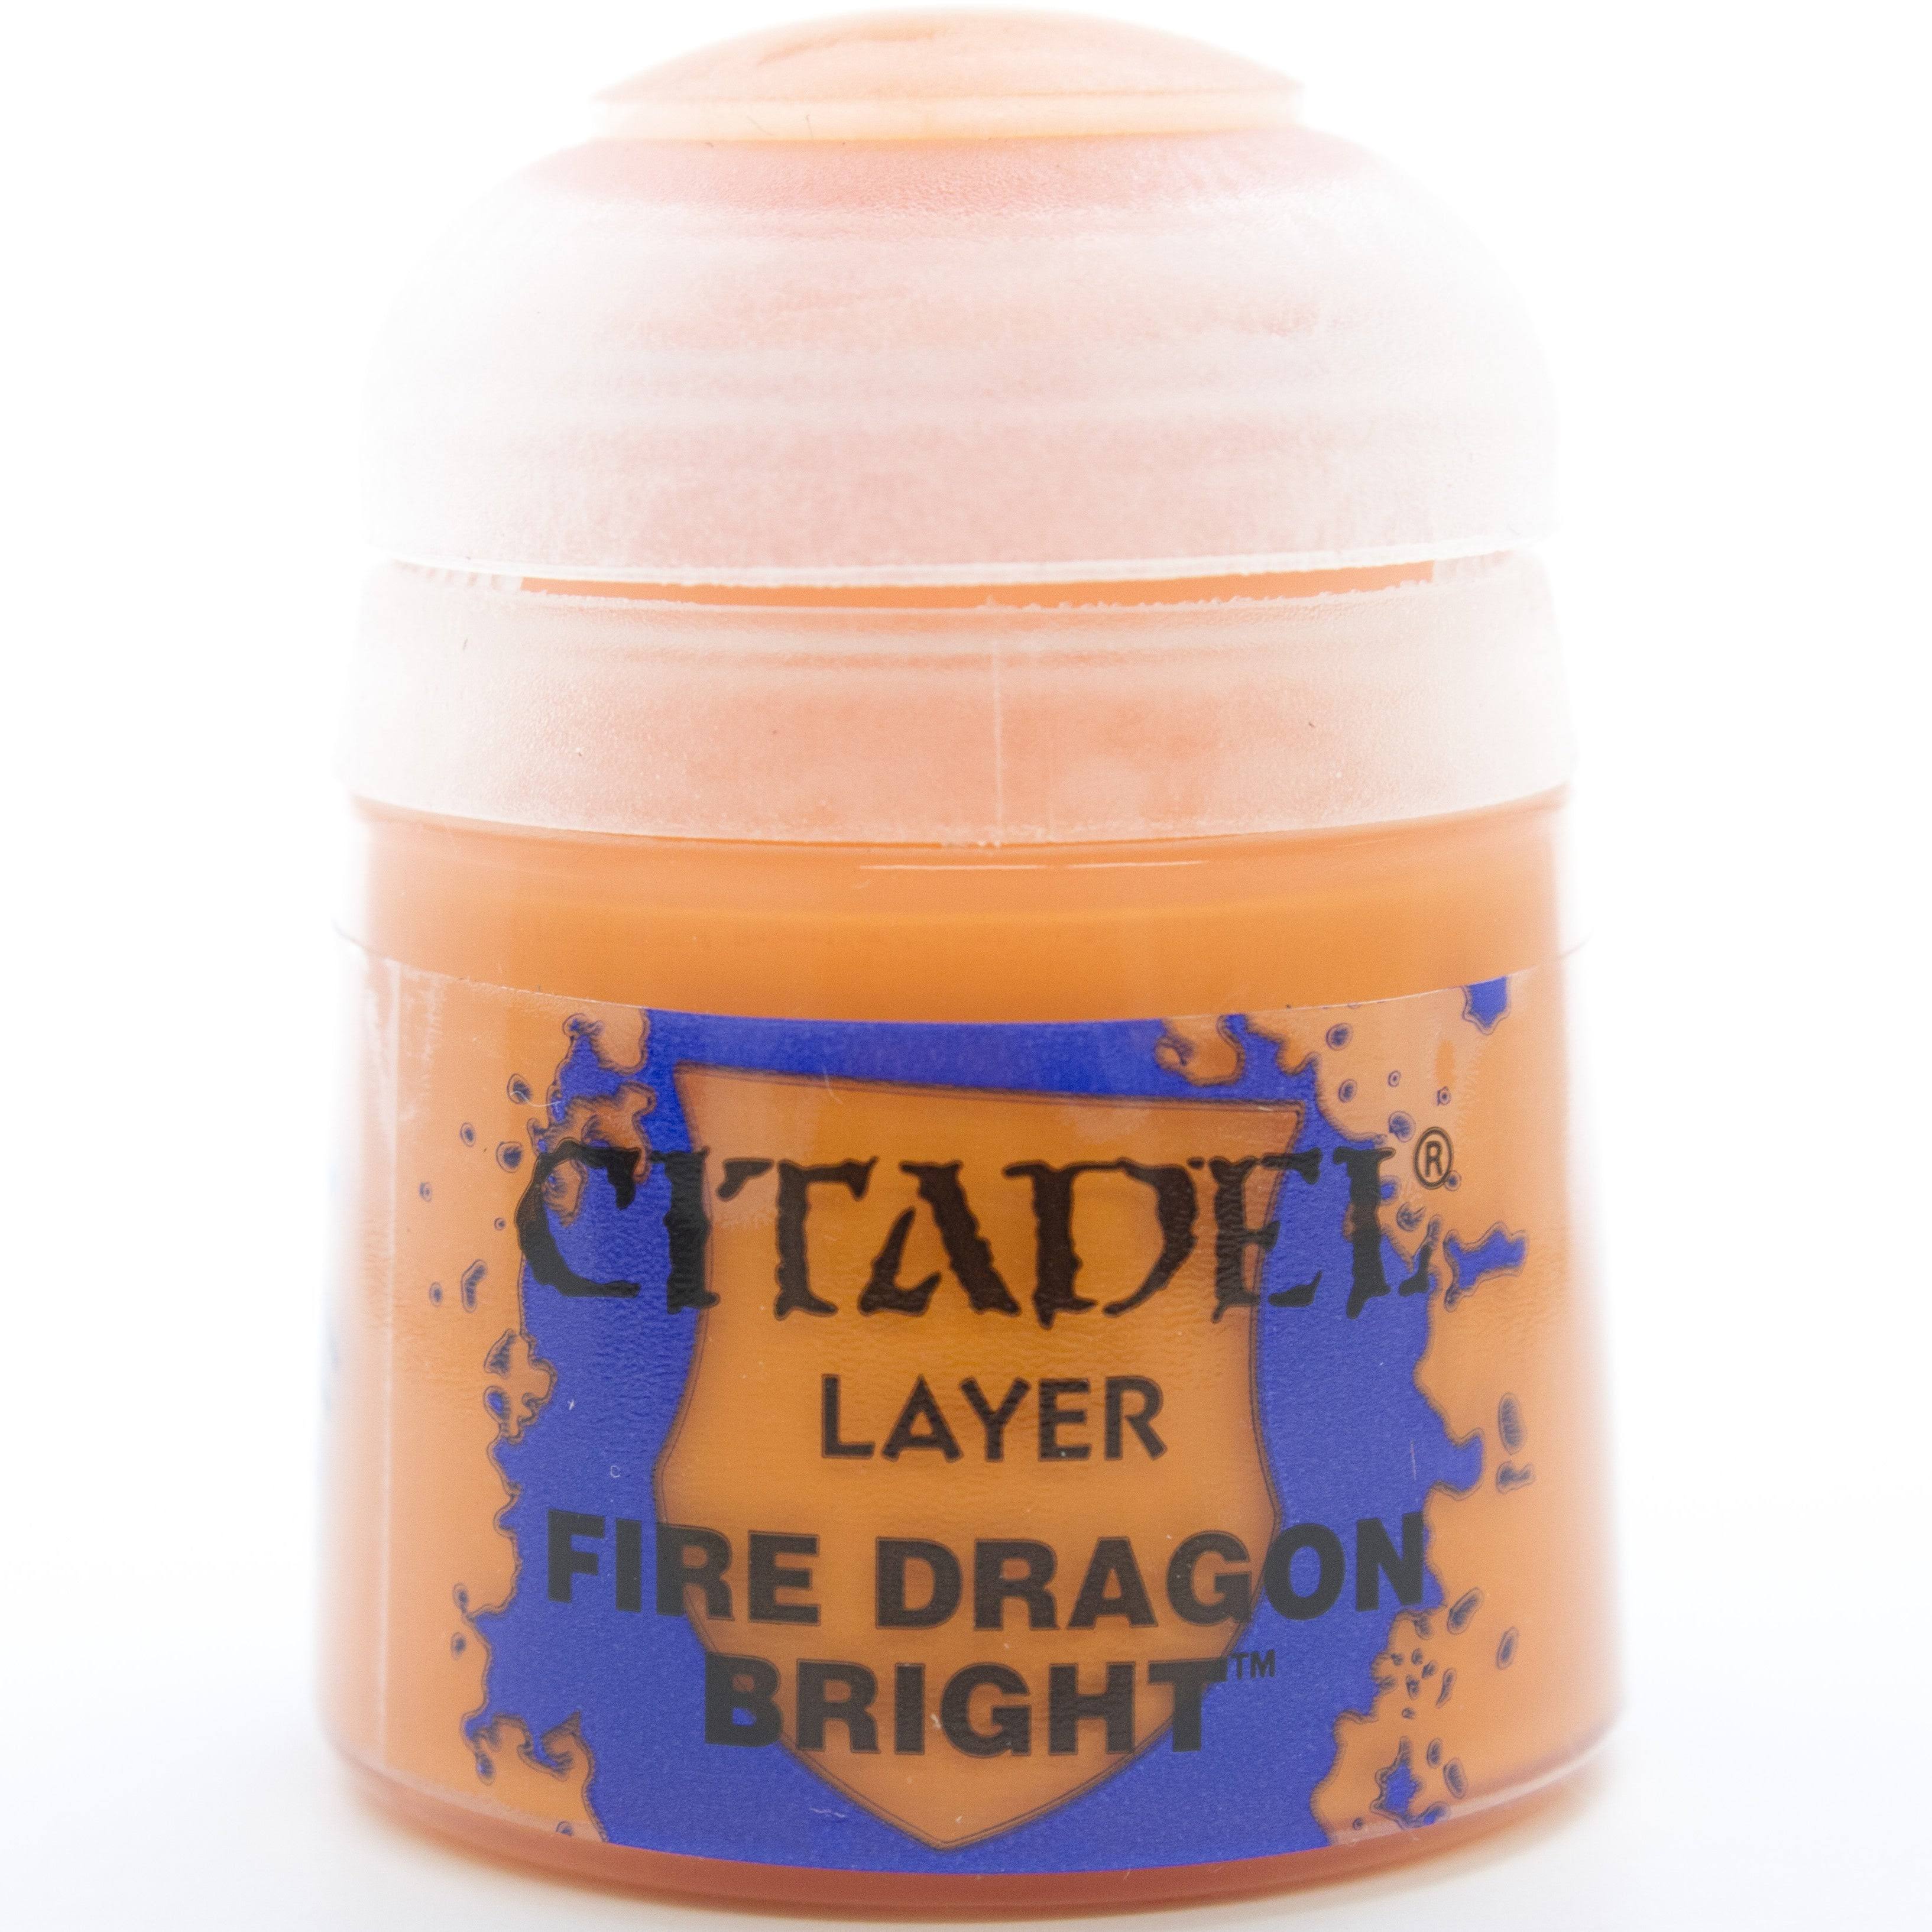 Citadel Layer: Fire Dragon Bright